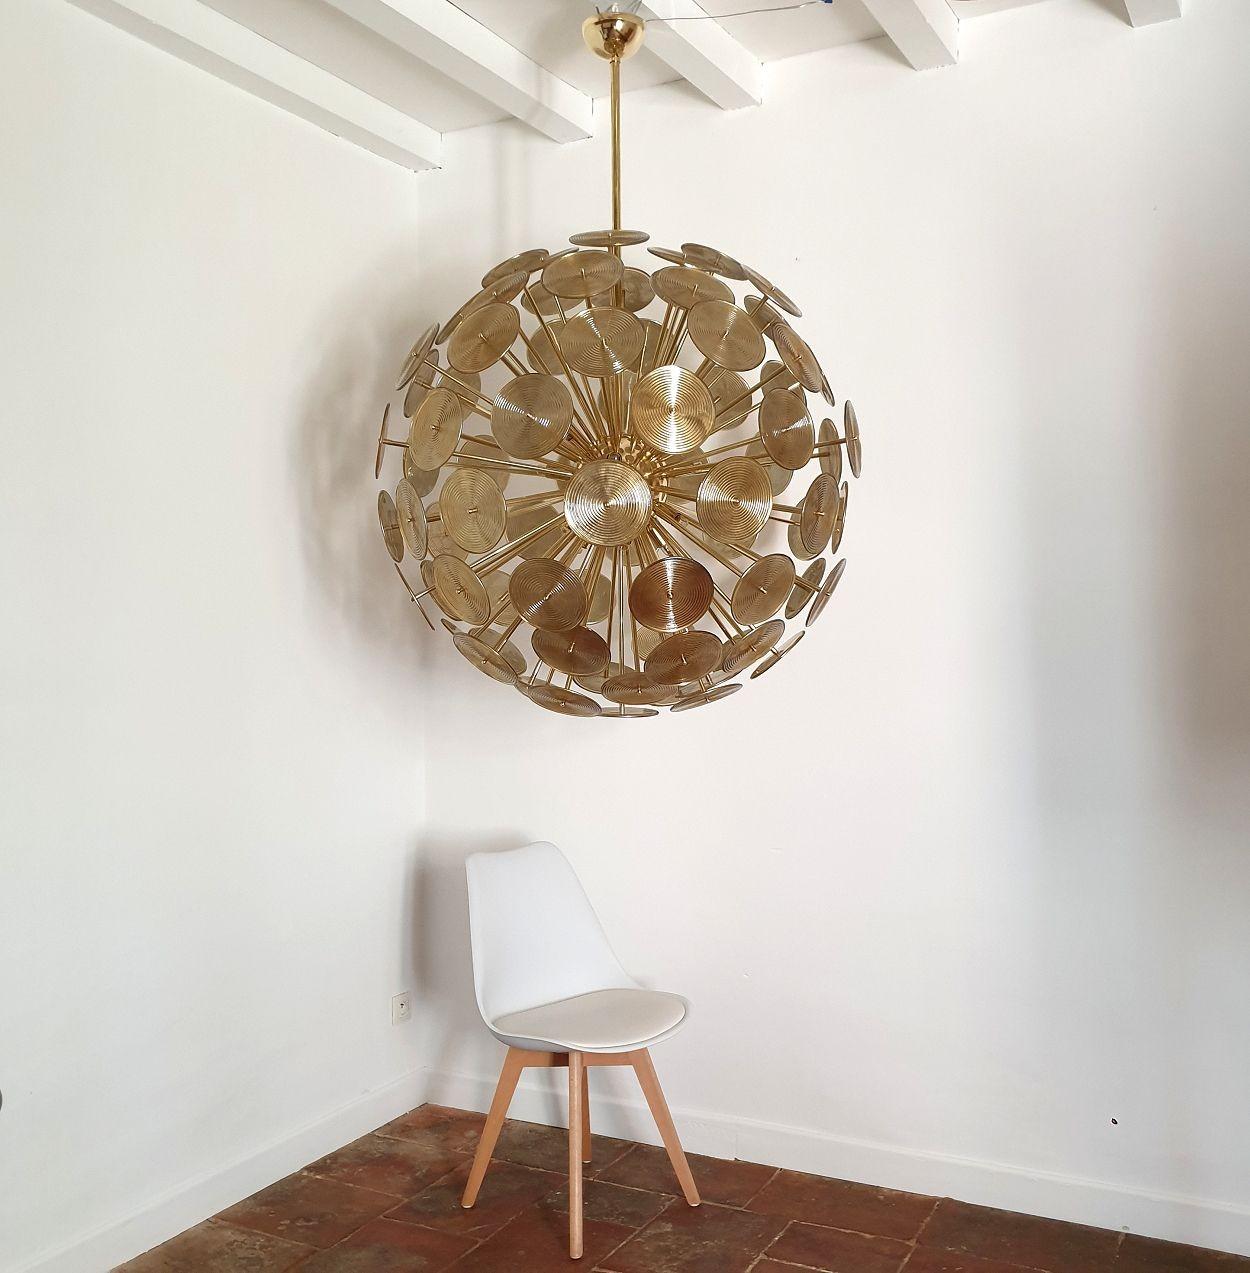 Énorme lustre Sputnik Modern en verre de Murano, style Vistosi Italie années 1980.
Le grand lustre italien est composé de disques en verre de Murano de couleur or, avec des cercles en relief sur la face extérieure.
Les disques en verre de Murano